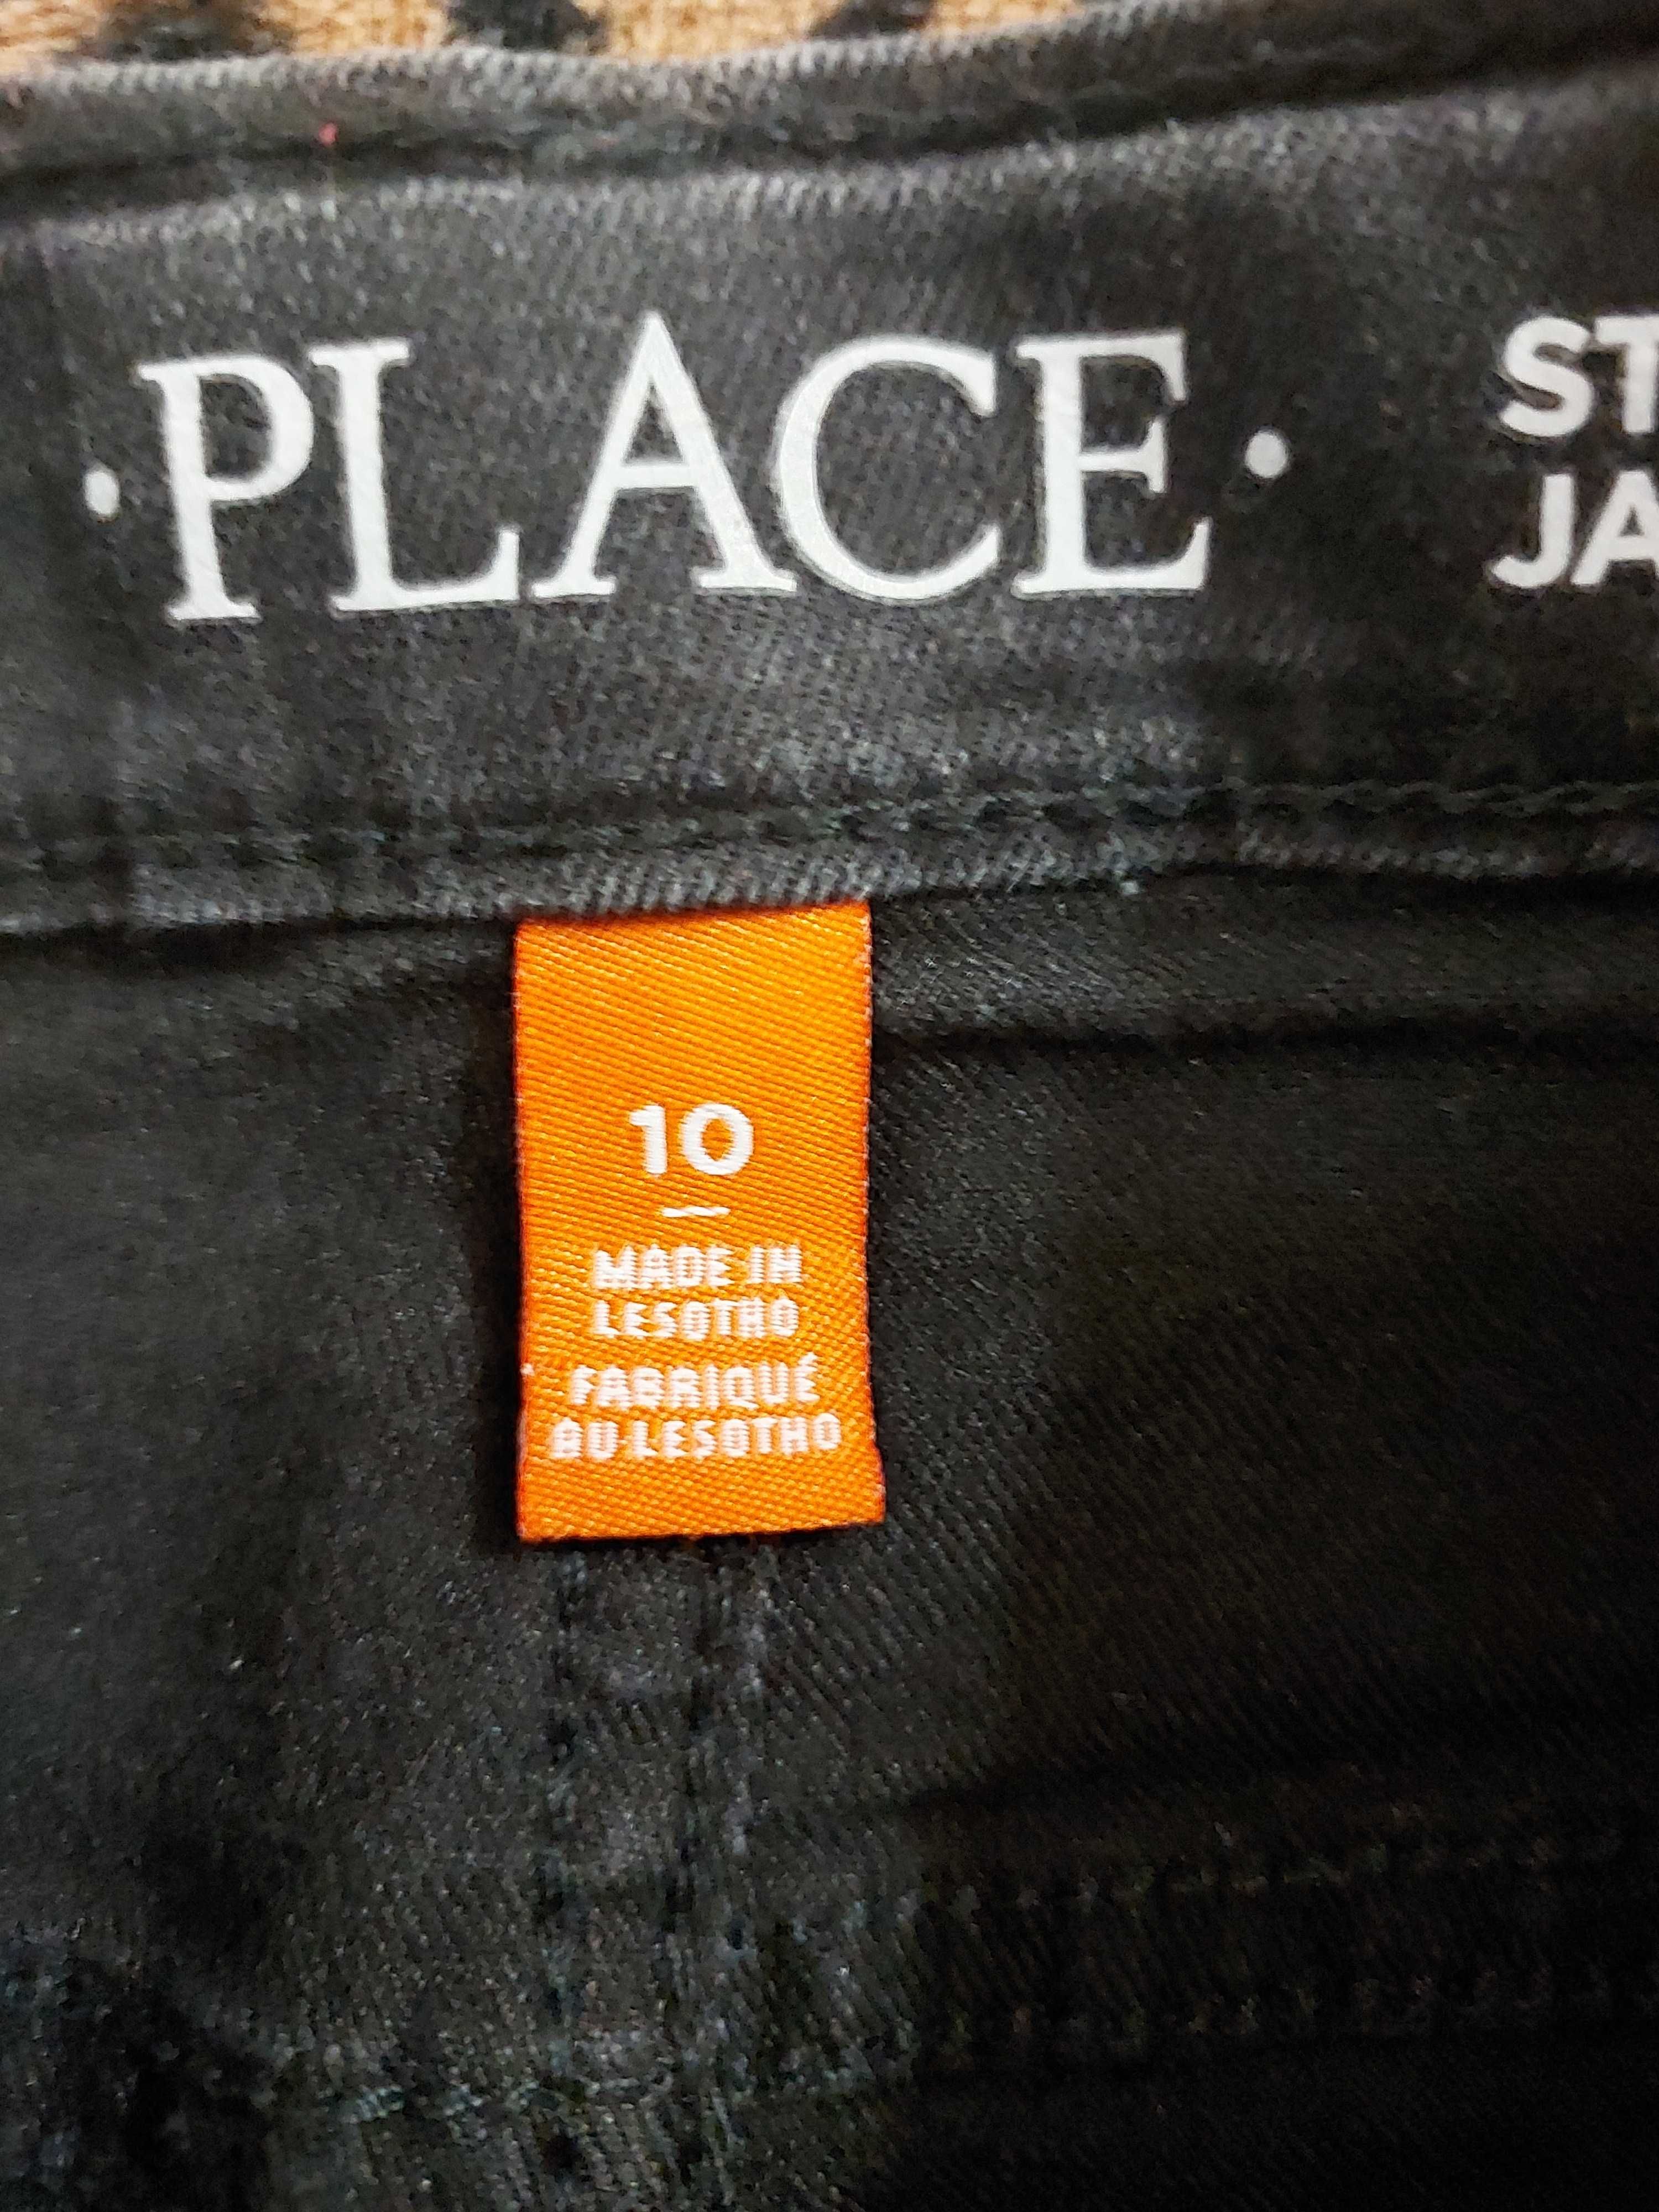 Джинсы брендовые "PLACE" размер 10  ткань стрейч.